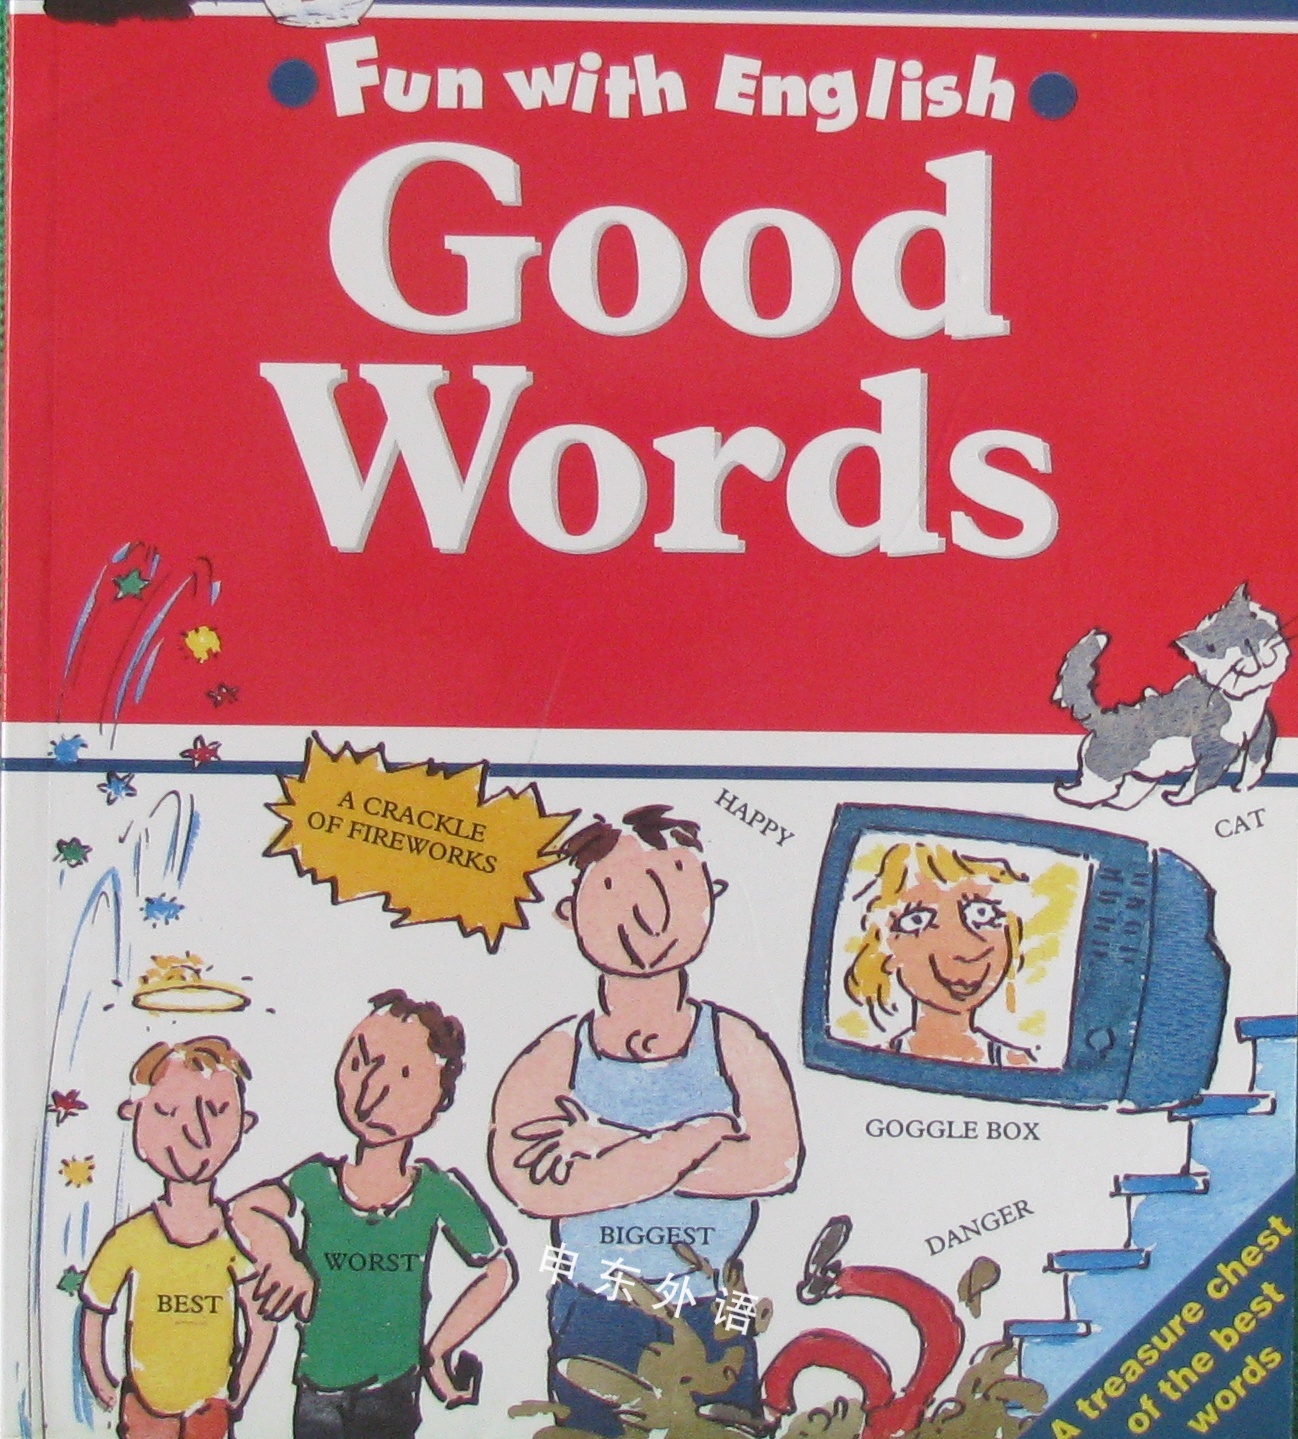 Good Words Fun with English _教育相关_儿童图书_进口图书_进口书,原版书,绘本书,英文原版图书,儿童纸板书,外语